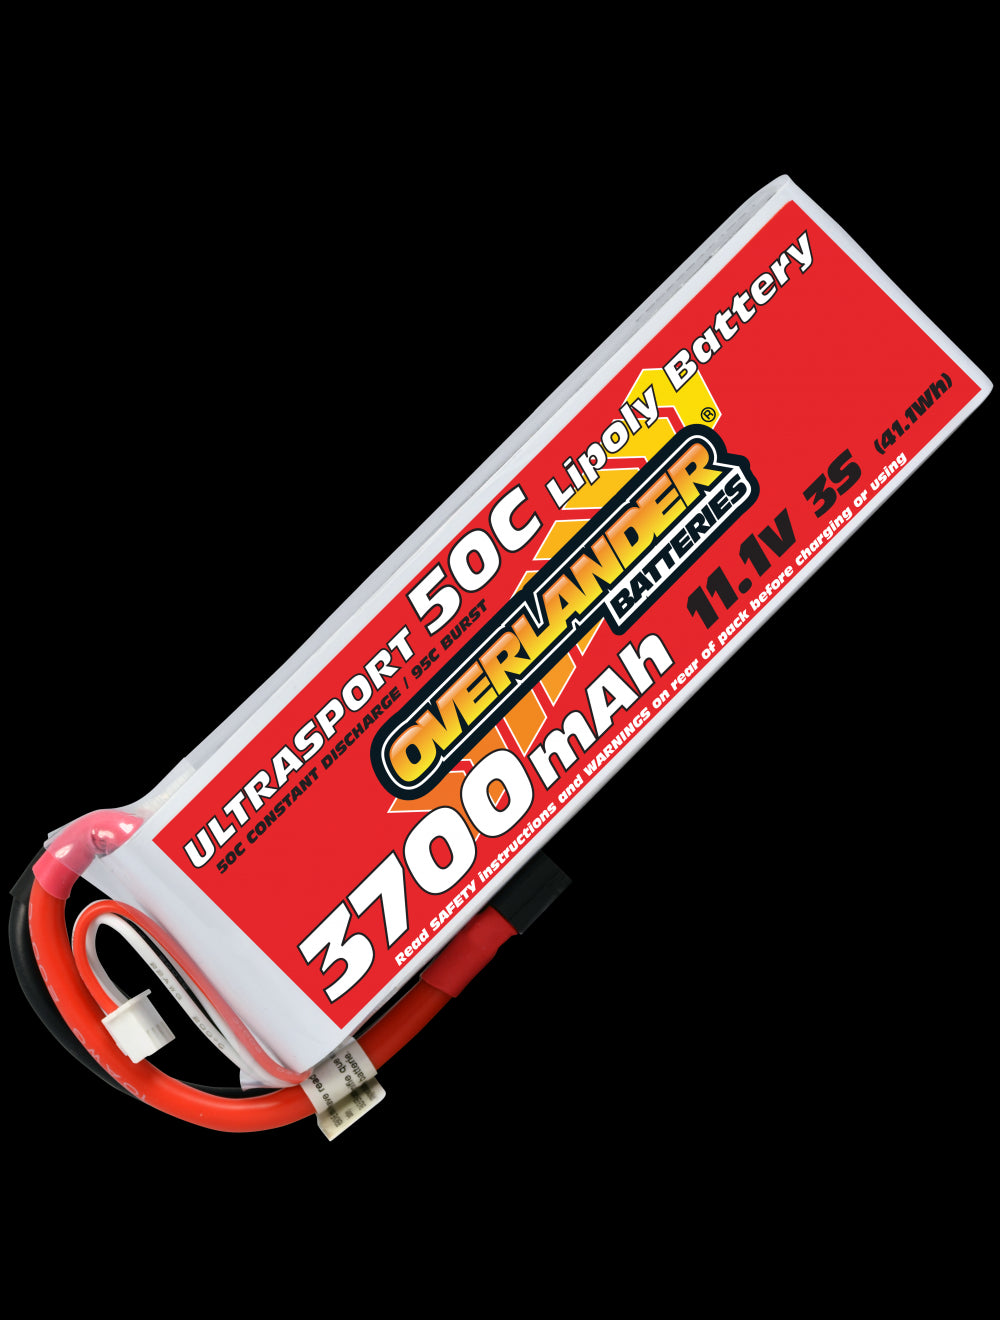 Overlander 3700mAh 11.1V 3S 50C Ultrasport LiPo Battery - EC3 Connector 2628